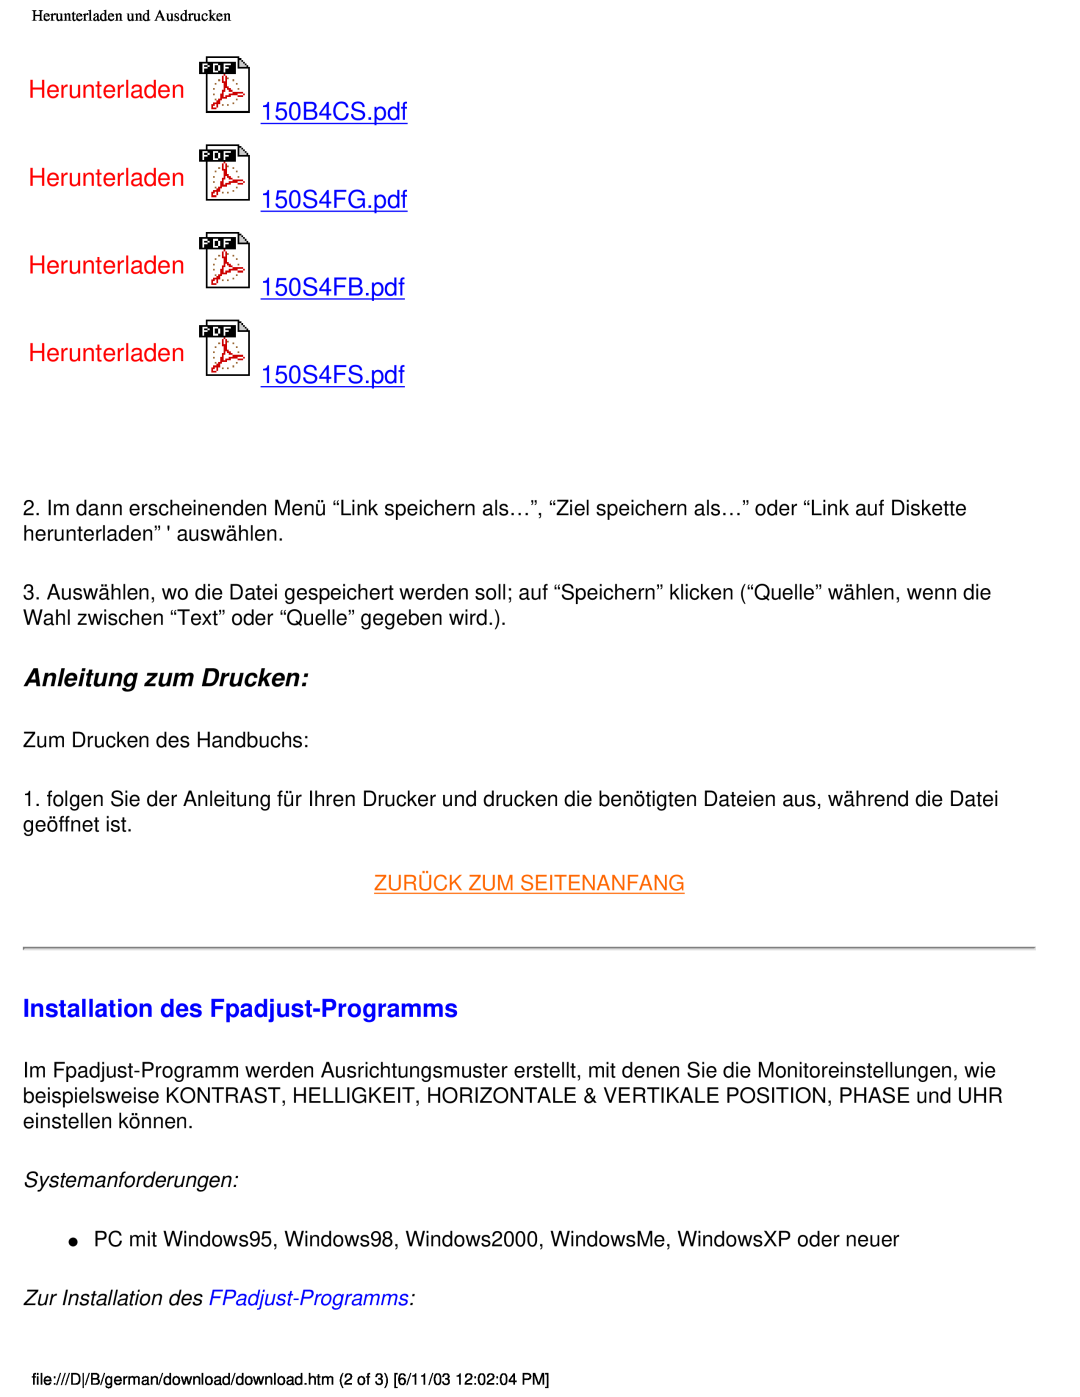 Philips 150B4AG Anleitung zum Drucken, Installation des Fpadjust-Programms, Herunterladen Herunterladen Herunterladen 